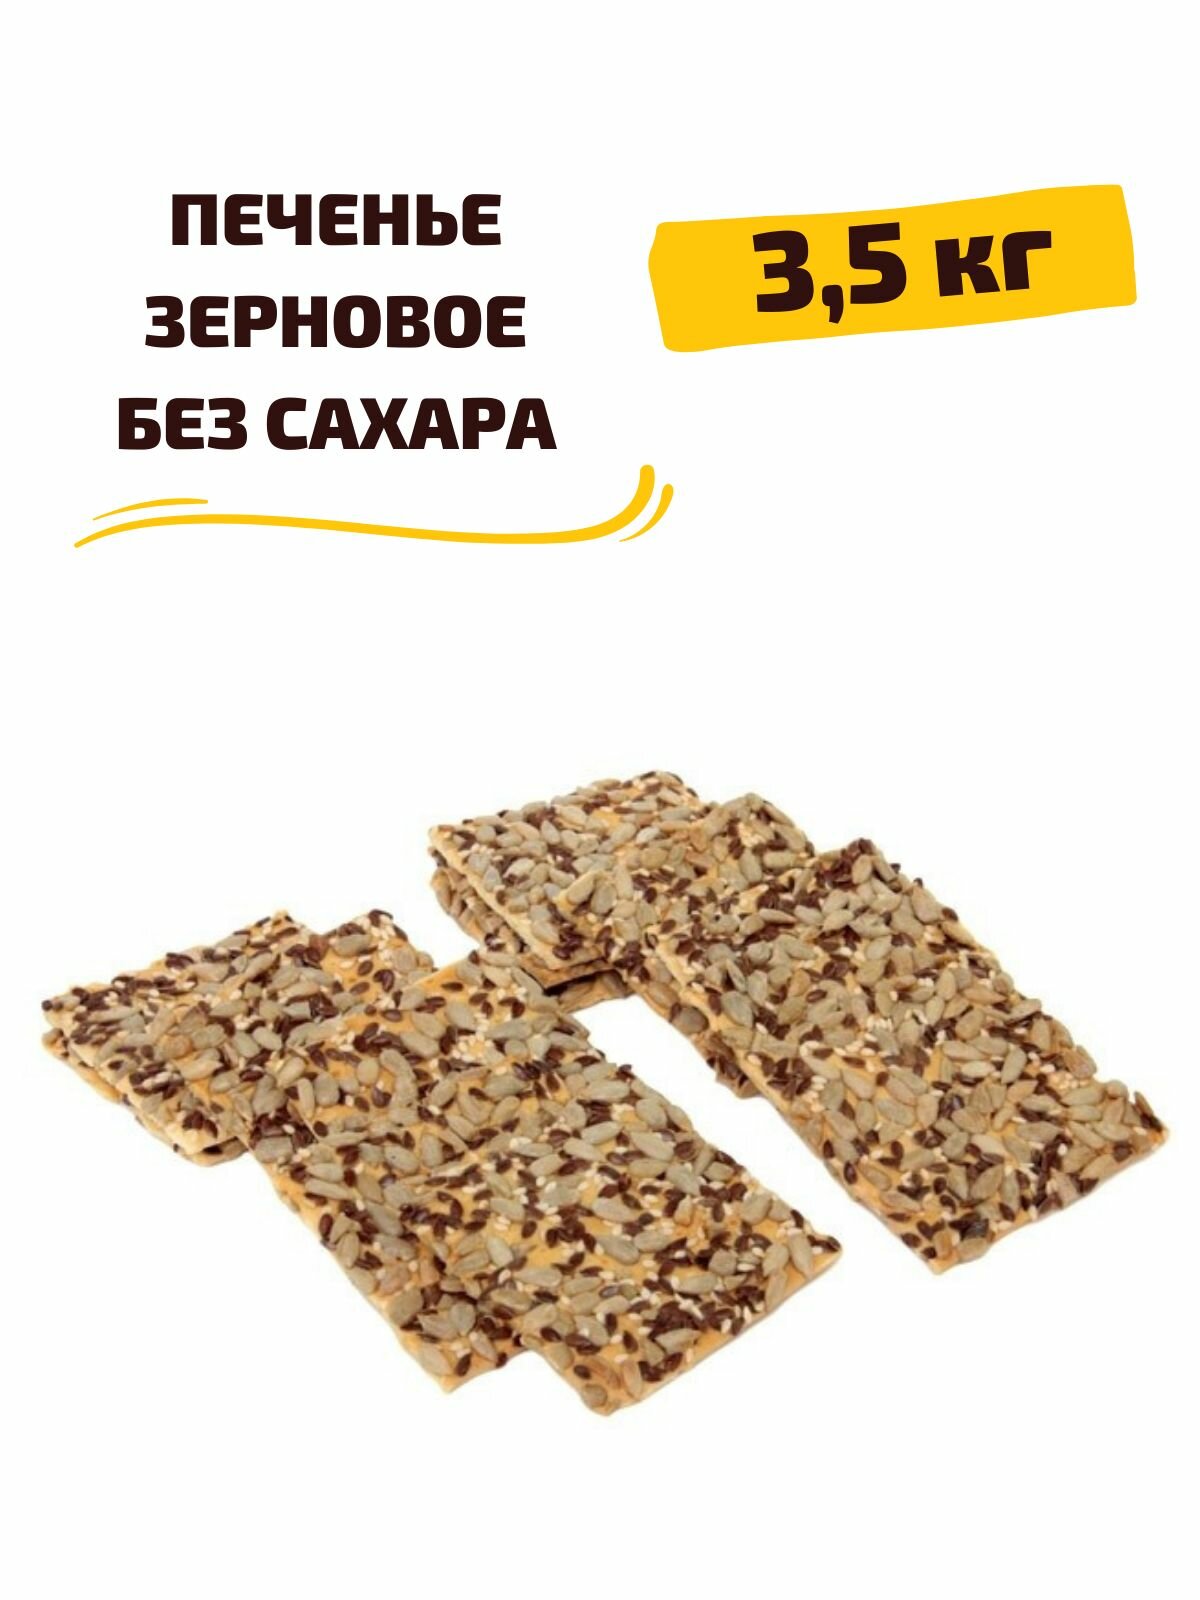 Печенье Зерновое с кунжутом, семенами льна и подсолнечника, без сахара, 3,5 кг